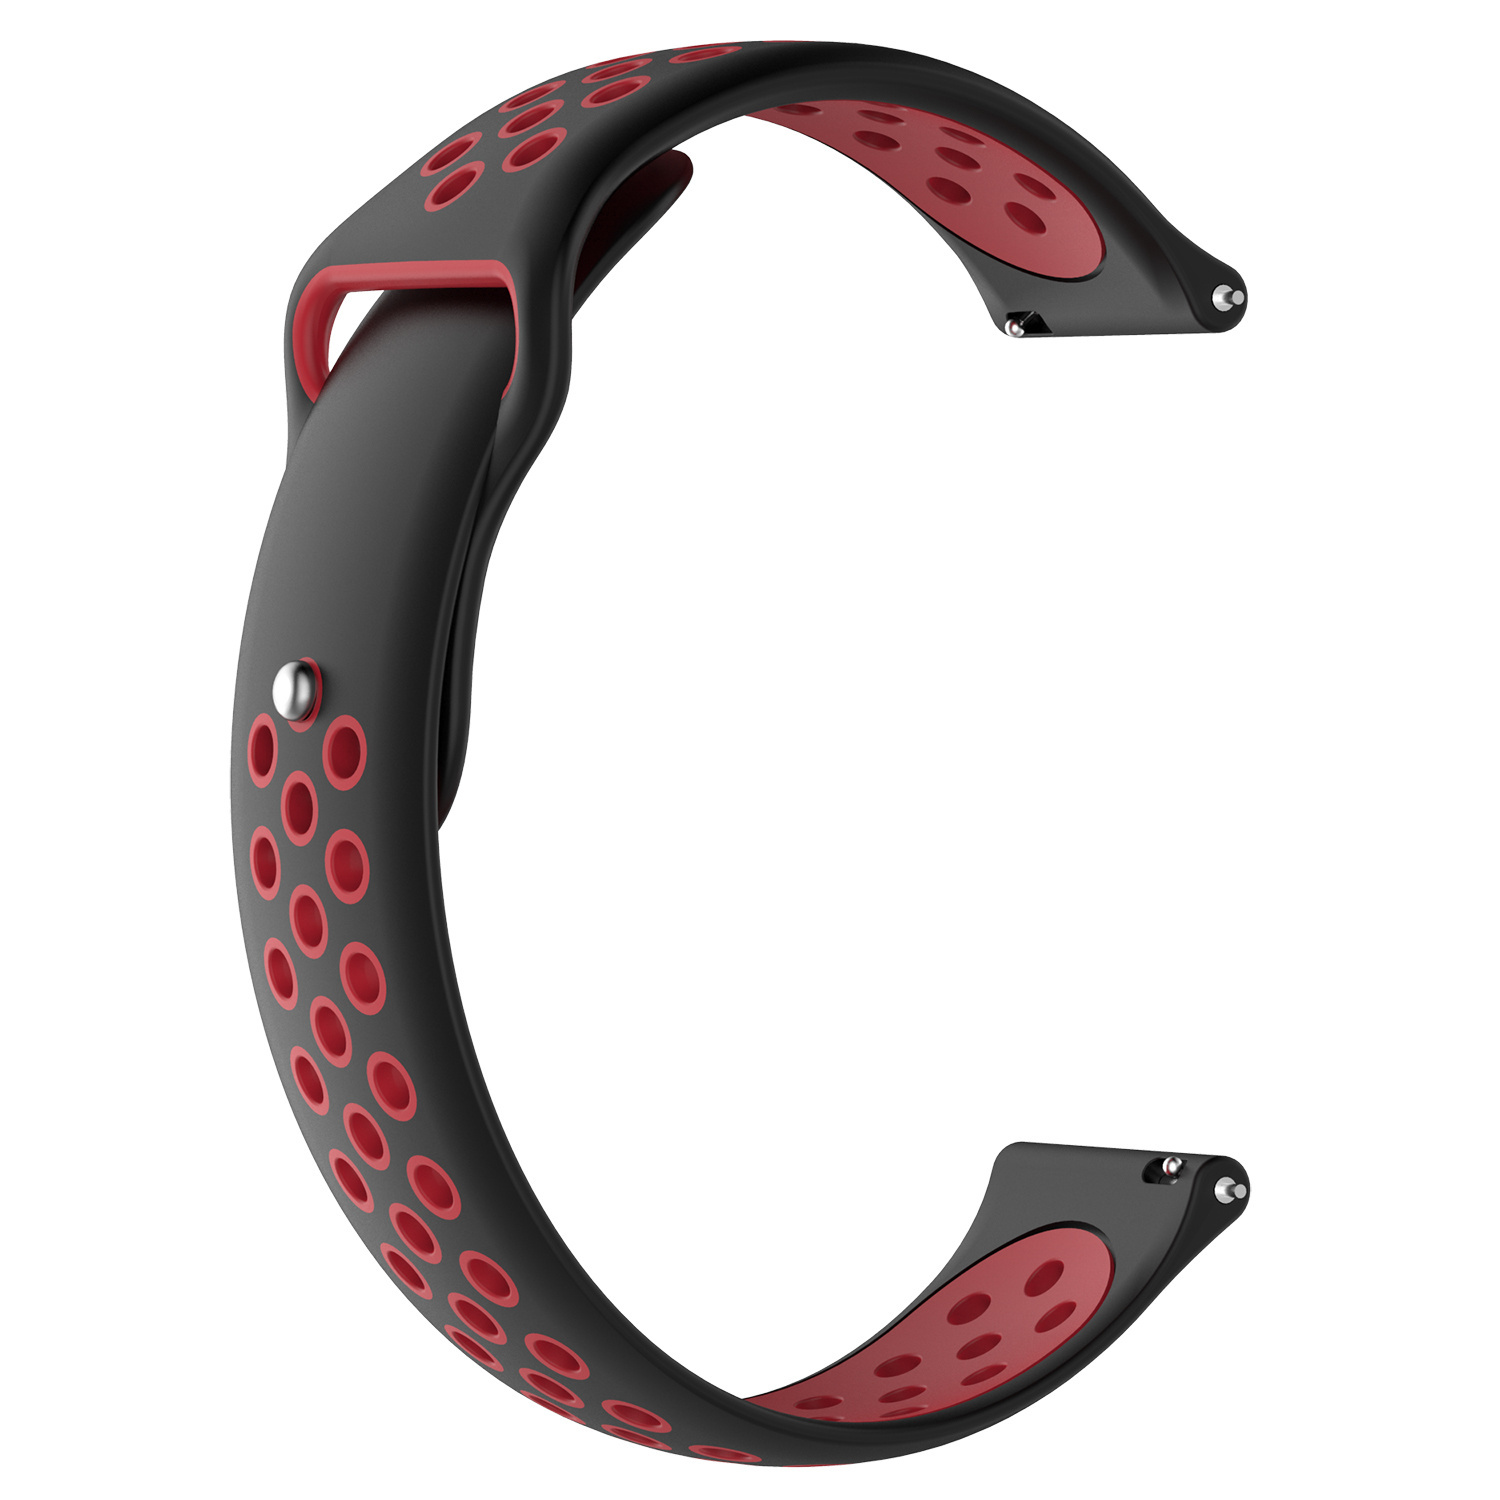 Cinturino doppio sport per Samsung Galaxy Watch - nero rosso